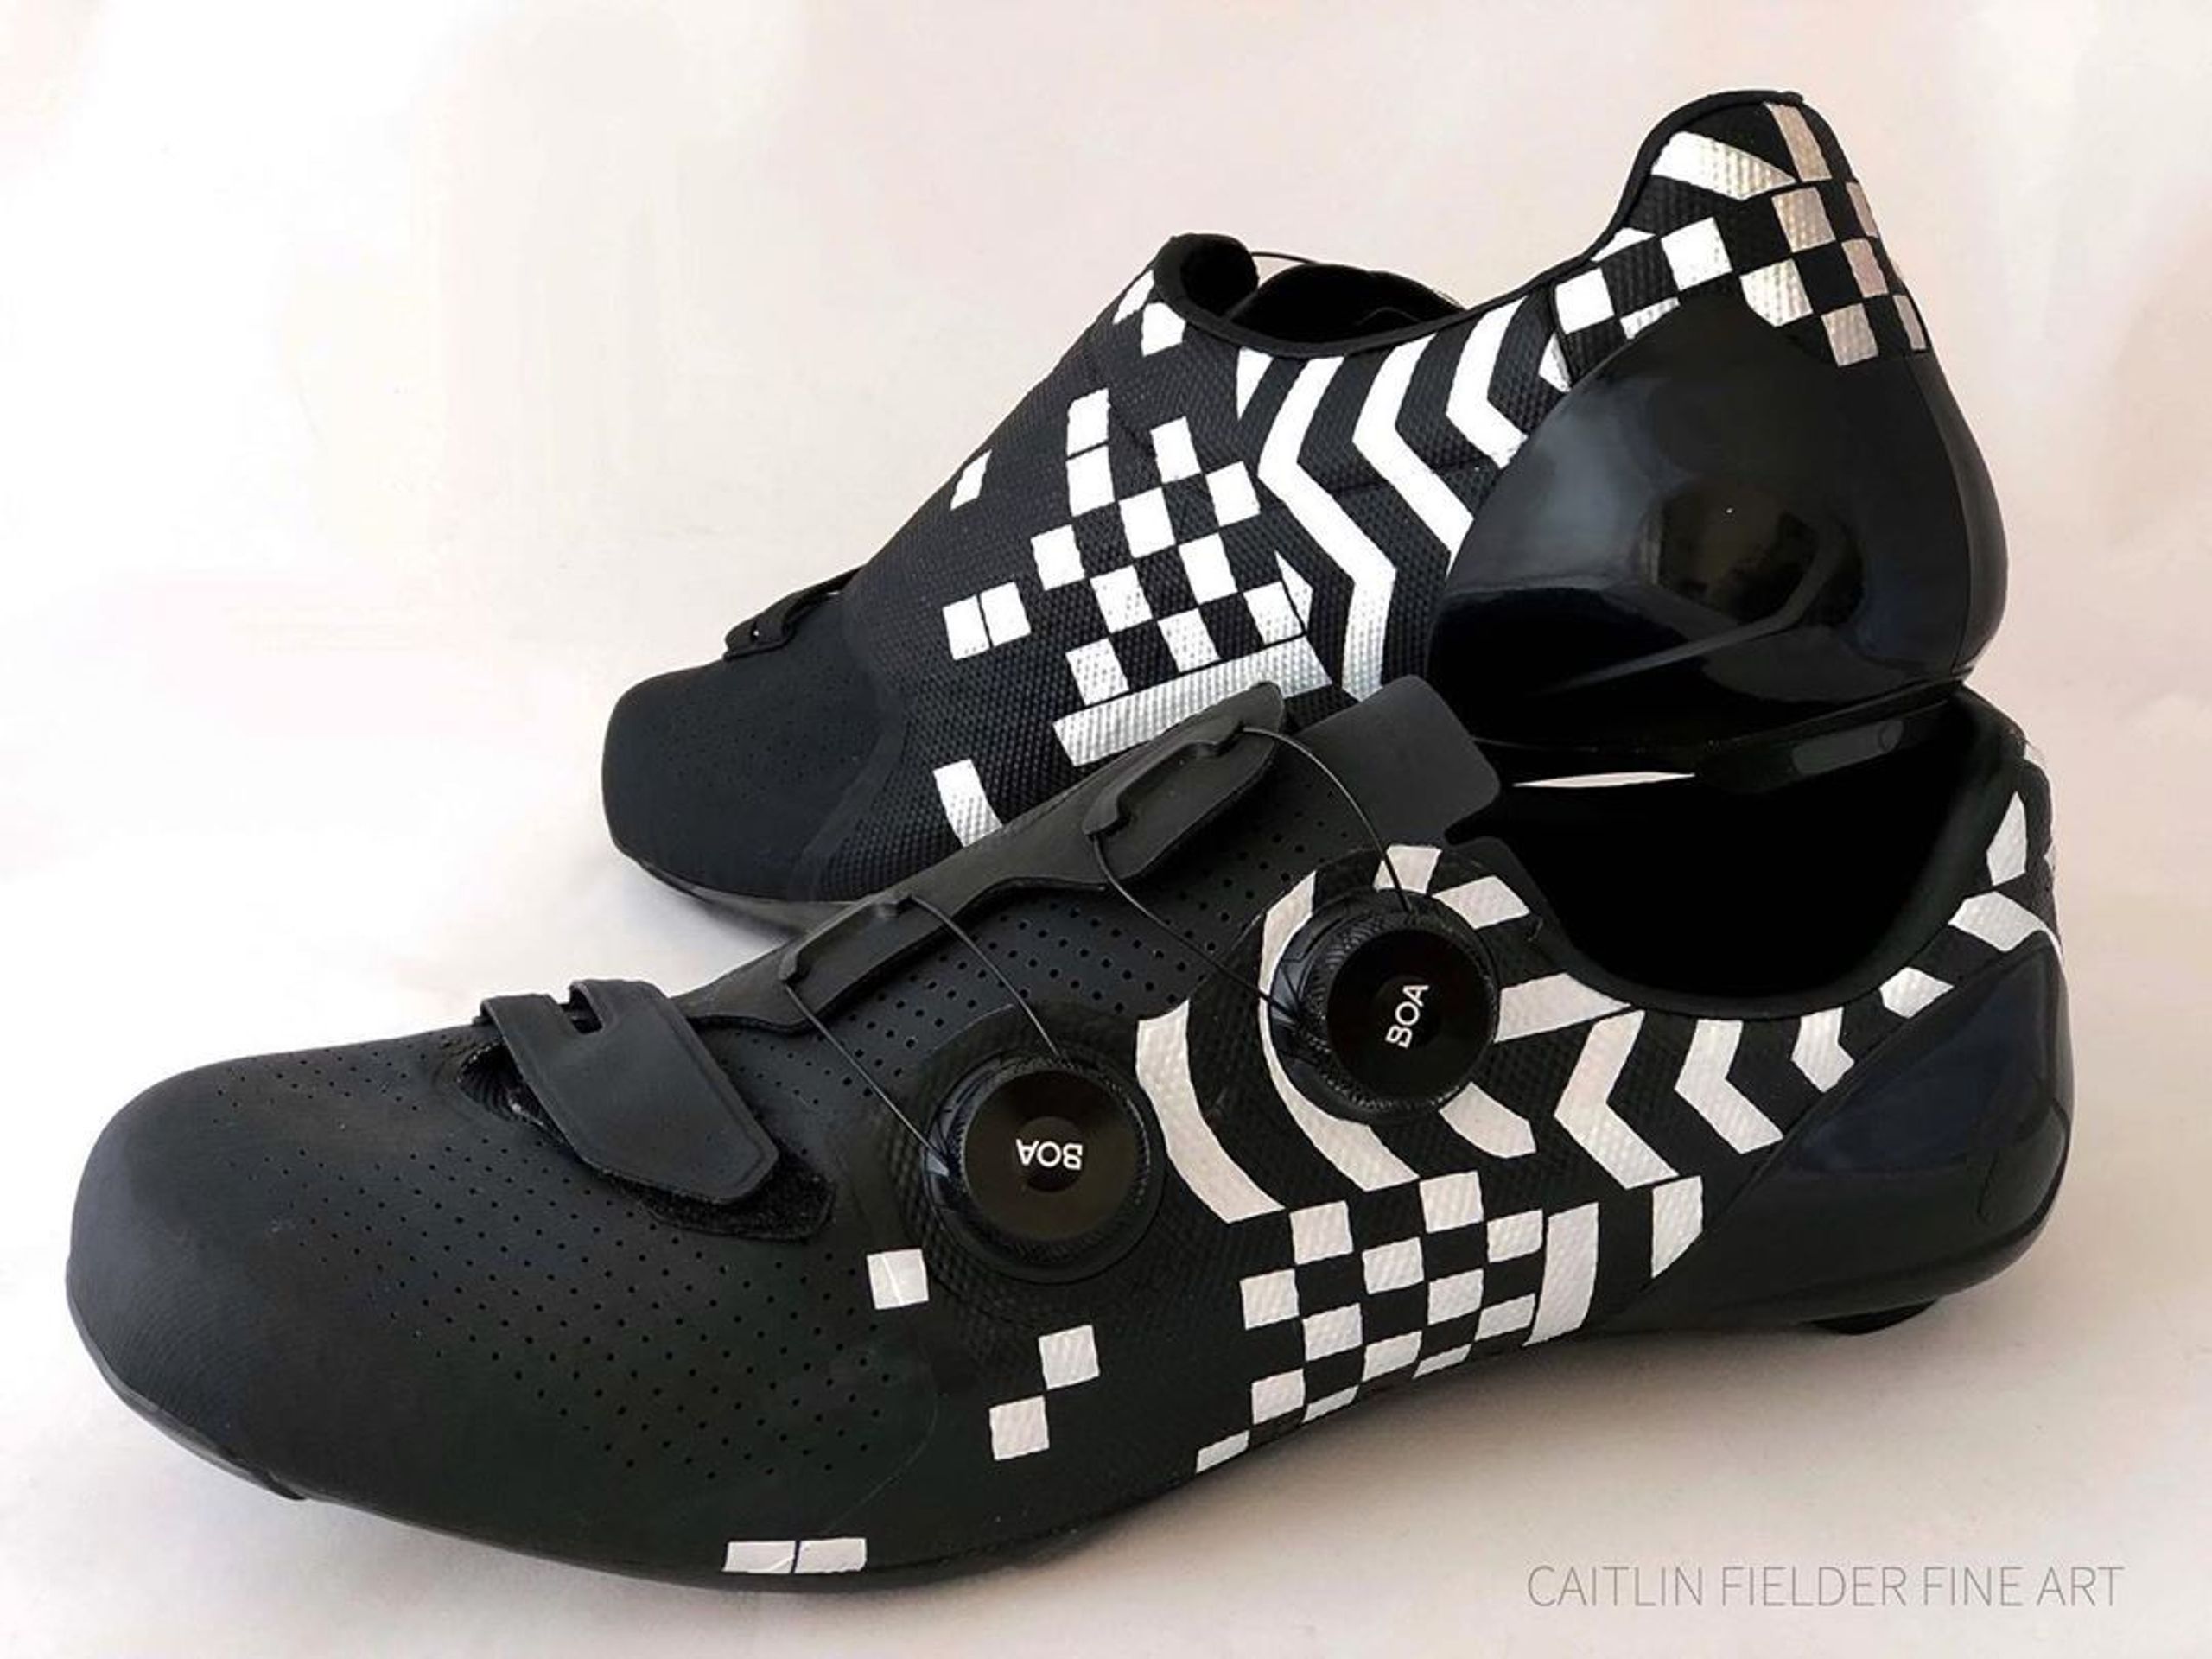 Cyklistické boty malované Caitlin Fiedlerovou - 3 - GALERIE: Skvostné vzory na cyklistických botách jezdců Tour (4/11)